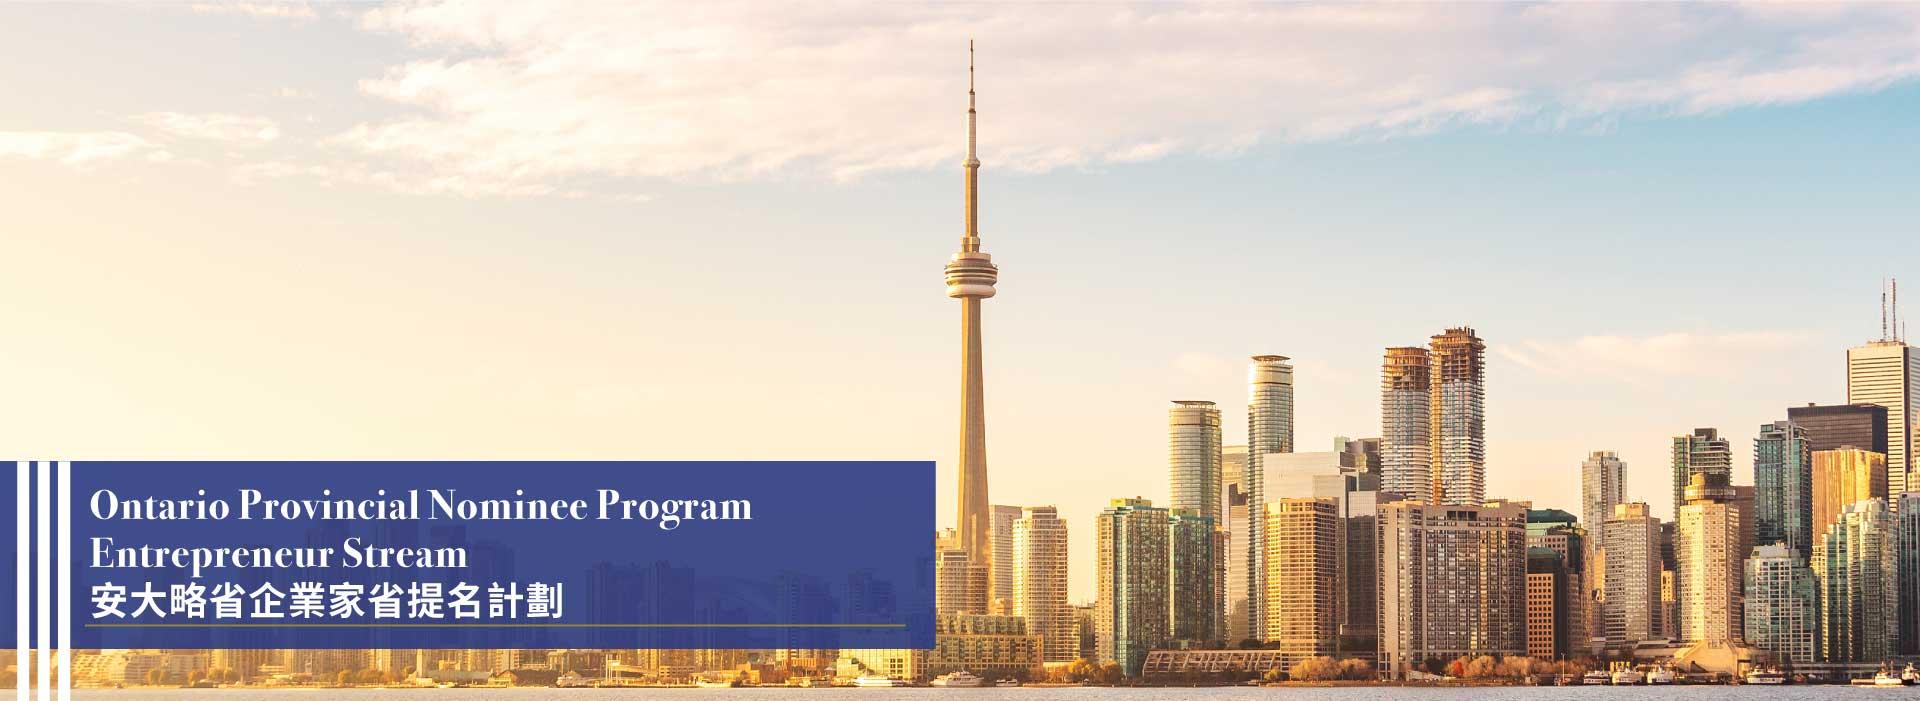 Ontario Provincial Nominee Program Entrepreneur Stream